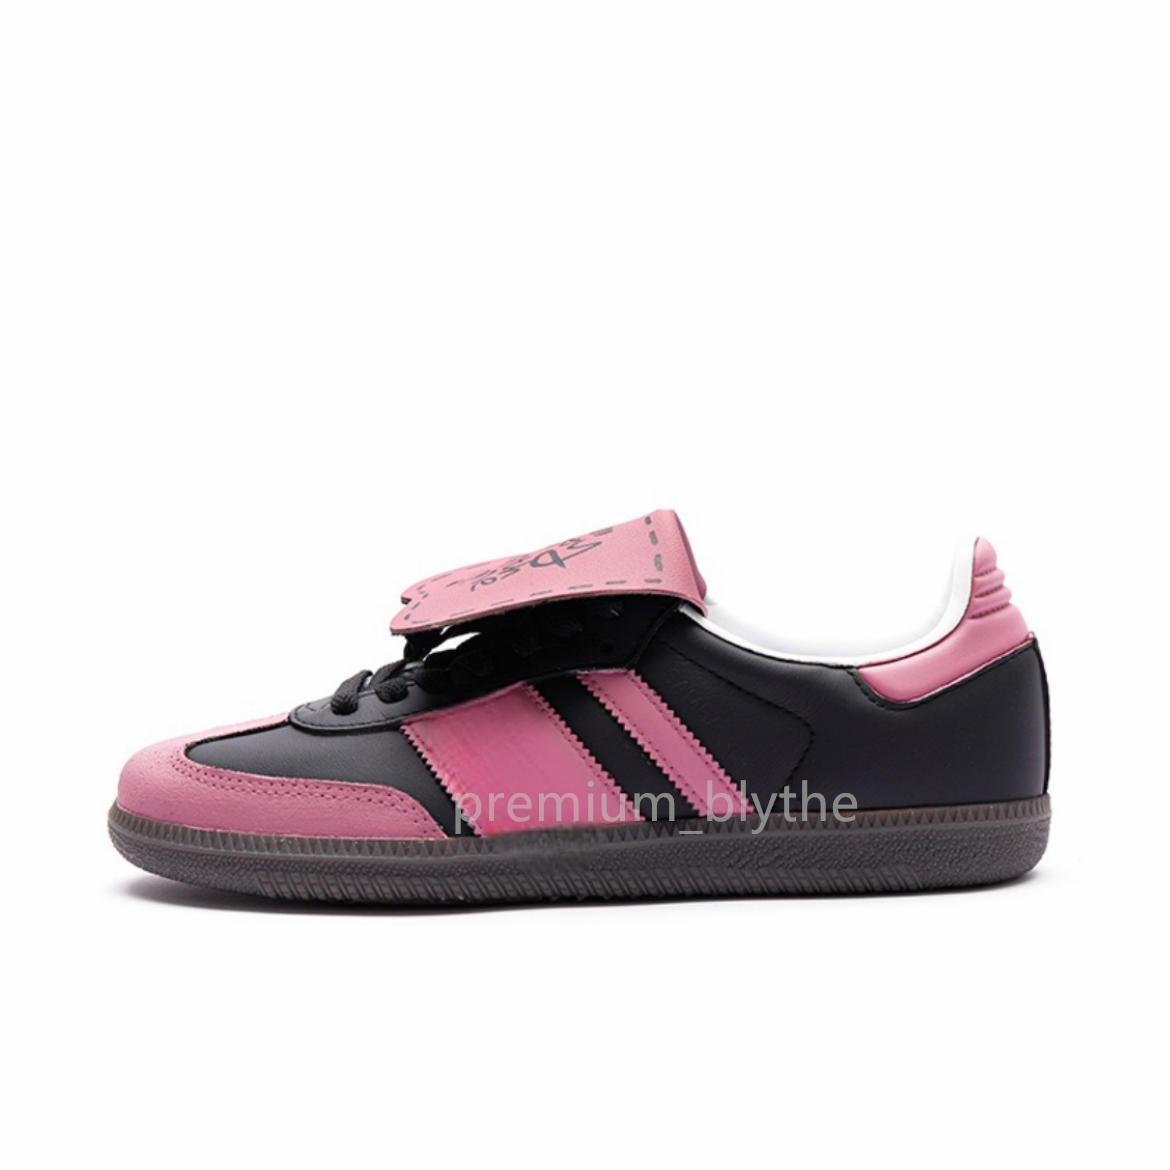 С коробкой новая дизайнерская обувь Spezial Og Shoe Wales Bonners Outdoor не скользящая подошва Sambas Sneakers Sport